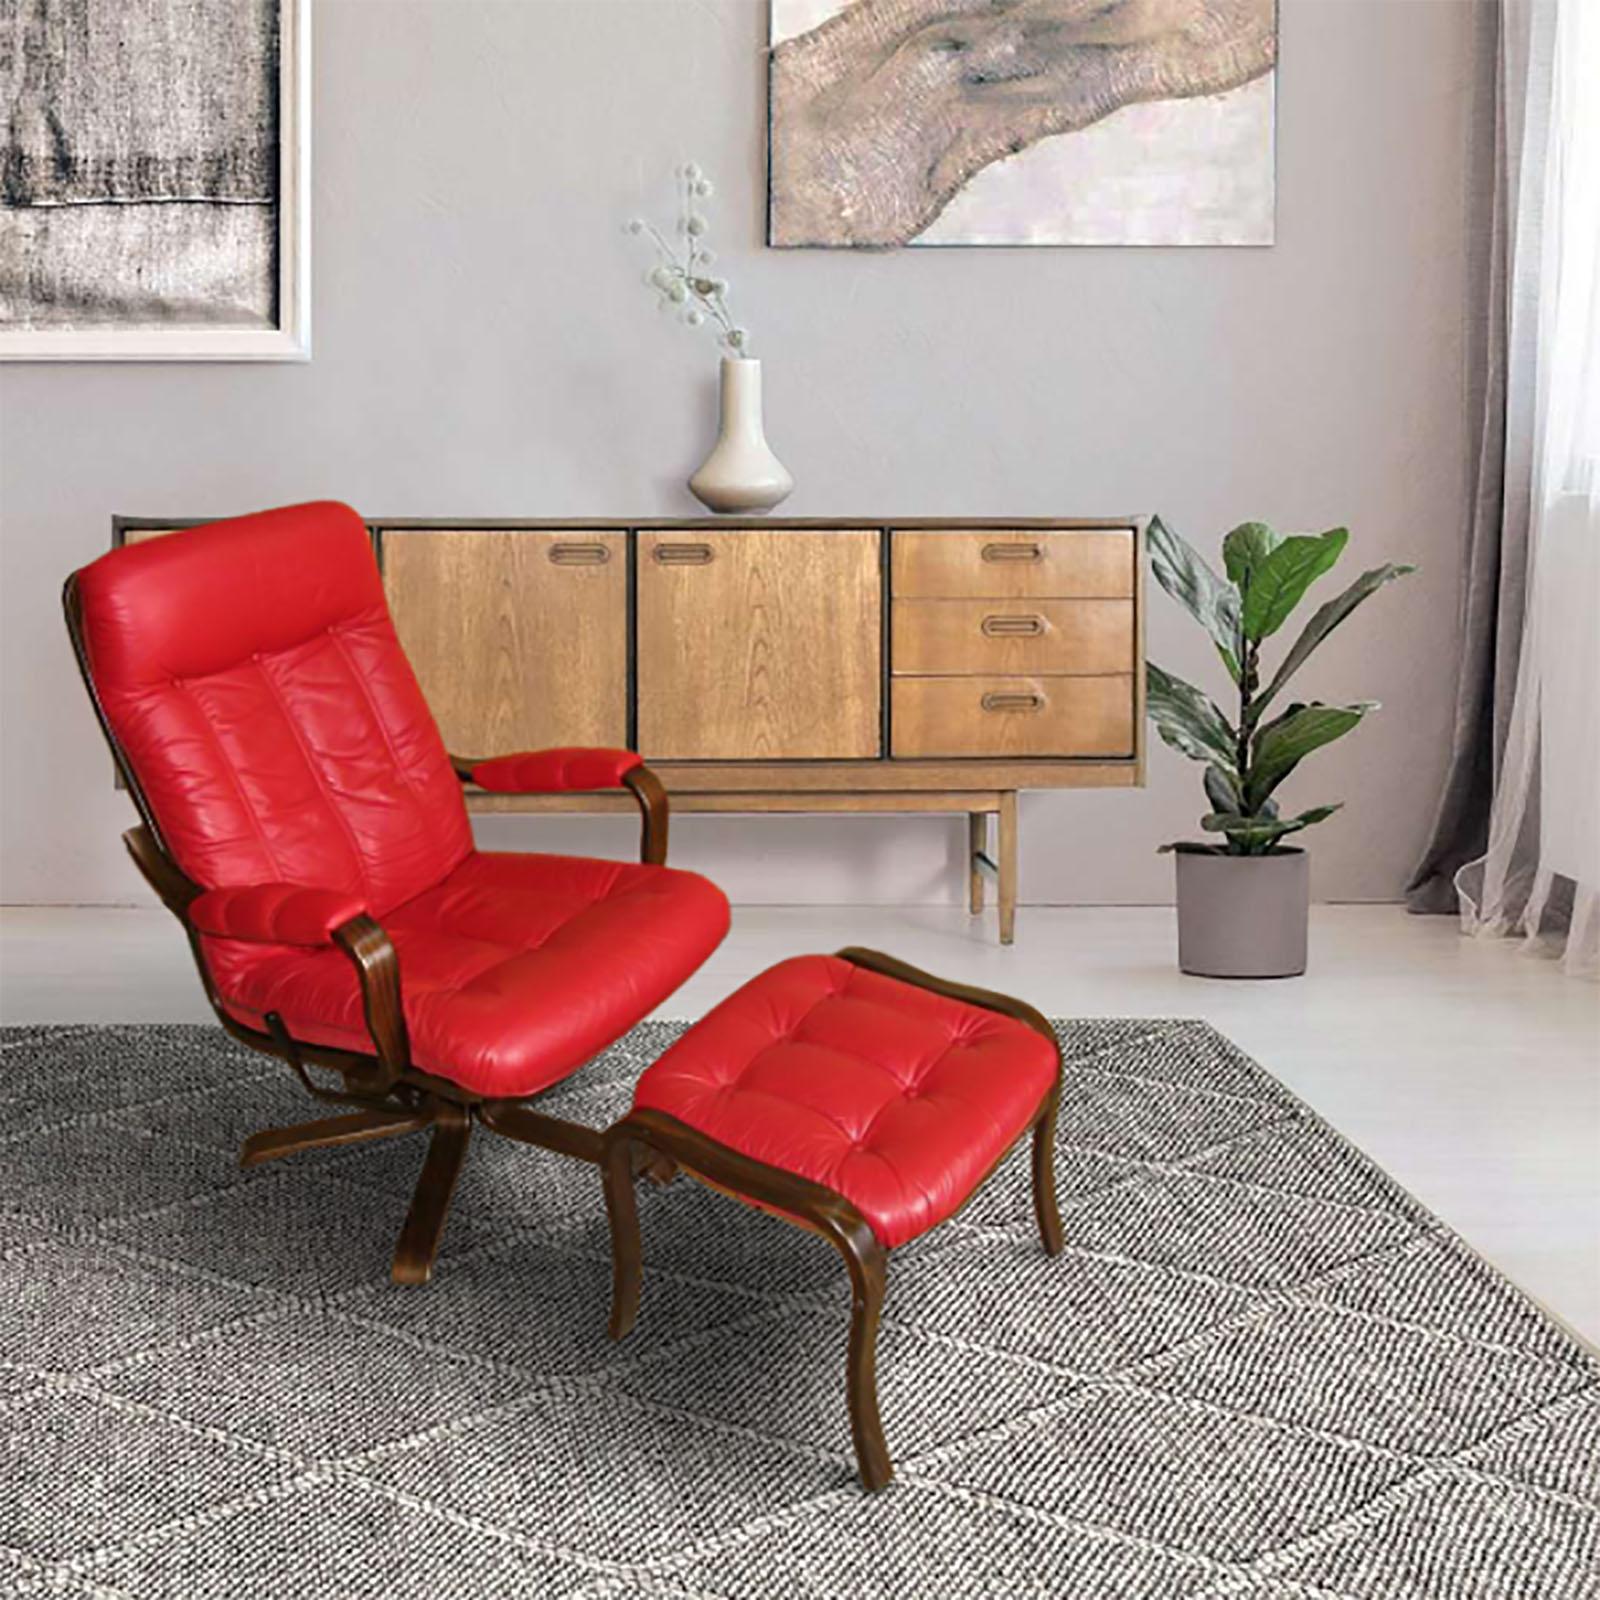 Göte Möbel Drehsessel mit Fußstütze, Schweden, 1970er Jahre, 2 Sets verfügbar. Ein Set besteht aus 1 Sessel und 1 Fußstütze.
Sehr bequemer Drehsessel mit Fußstütze, Buche gebeizt mit rotem Softlederbezug. Die Unterseite der Polsterung ist mit rotem